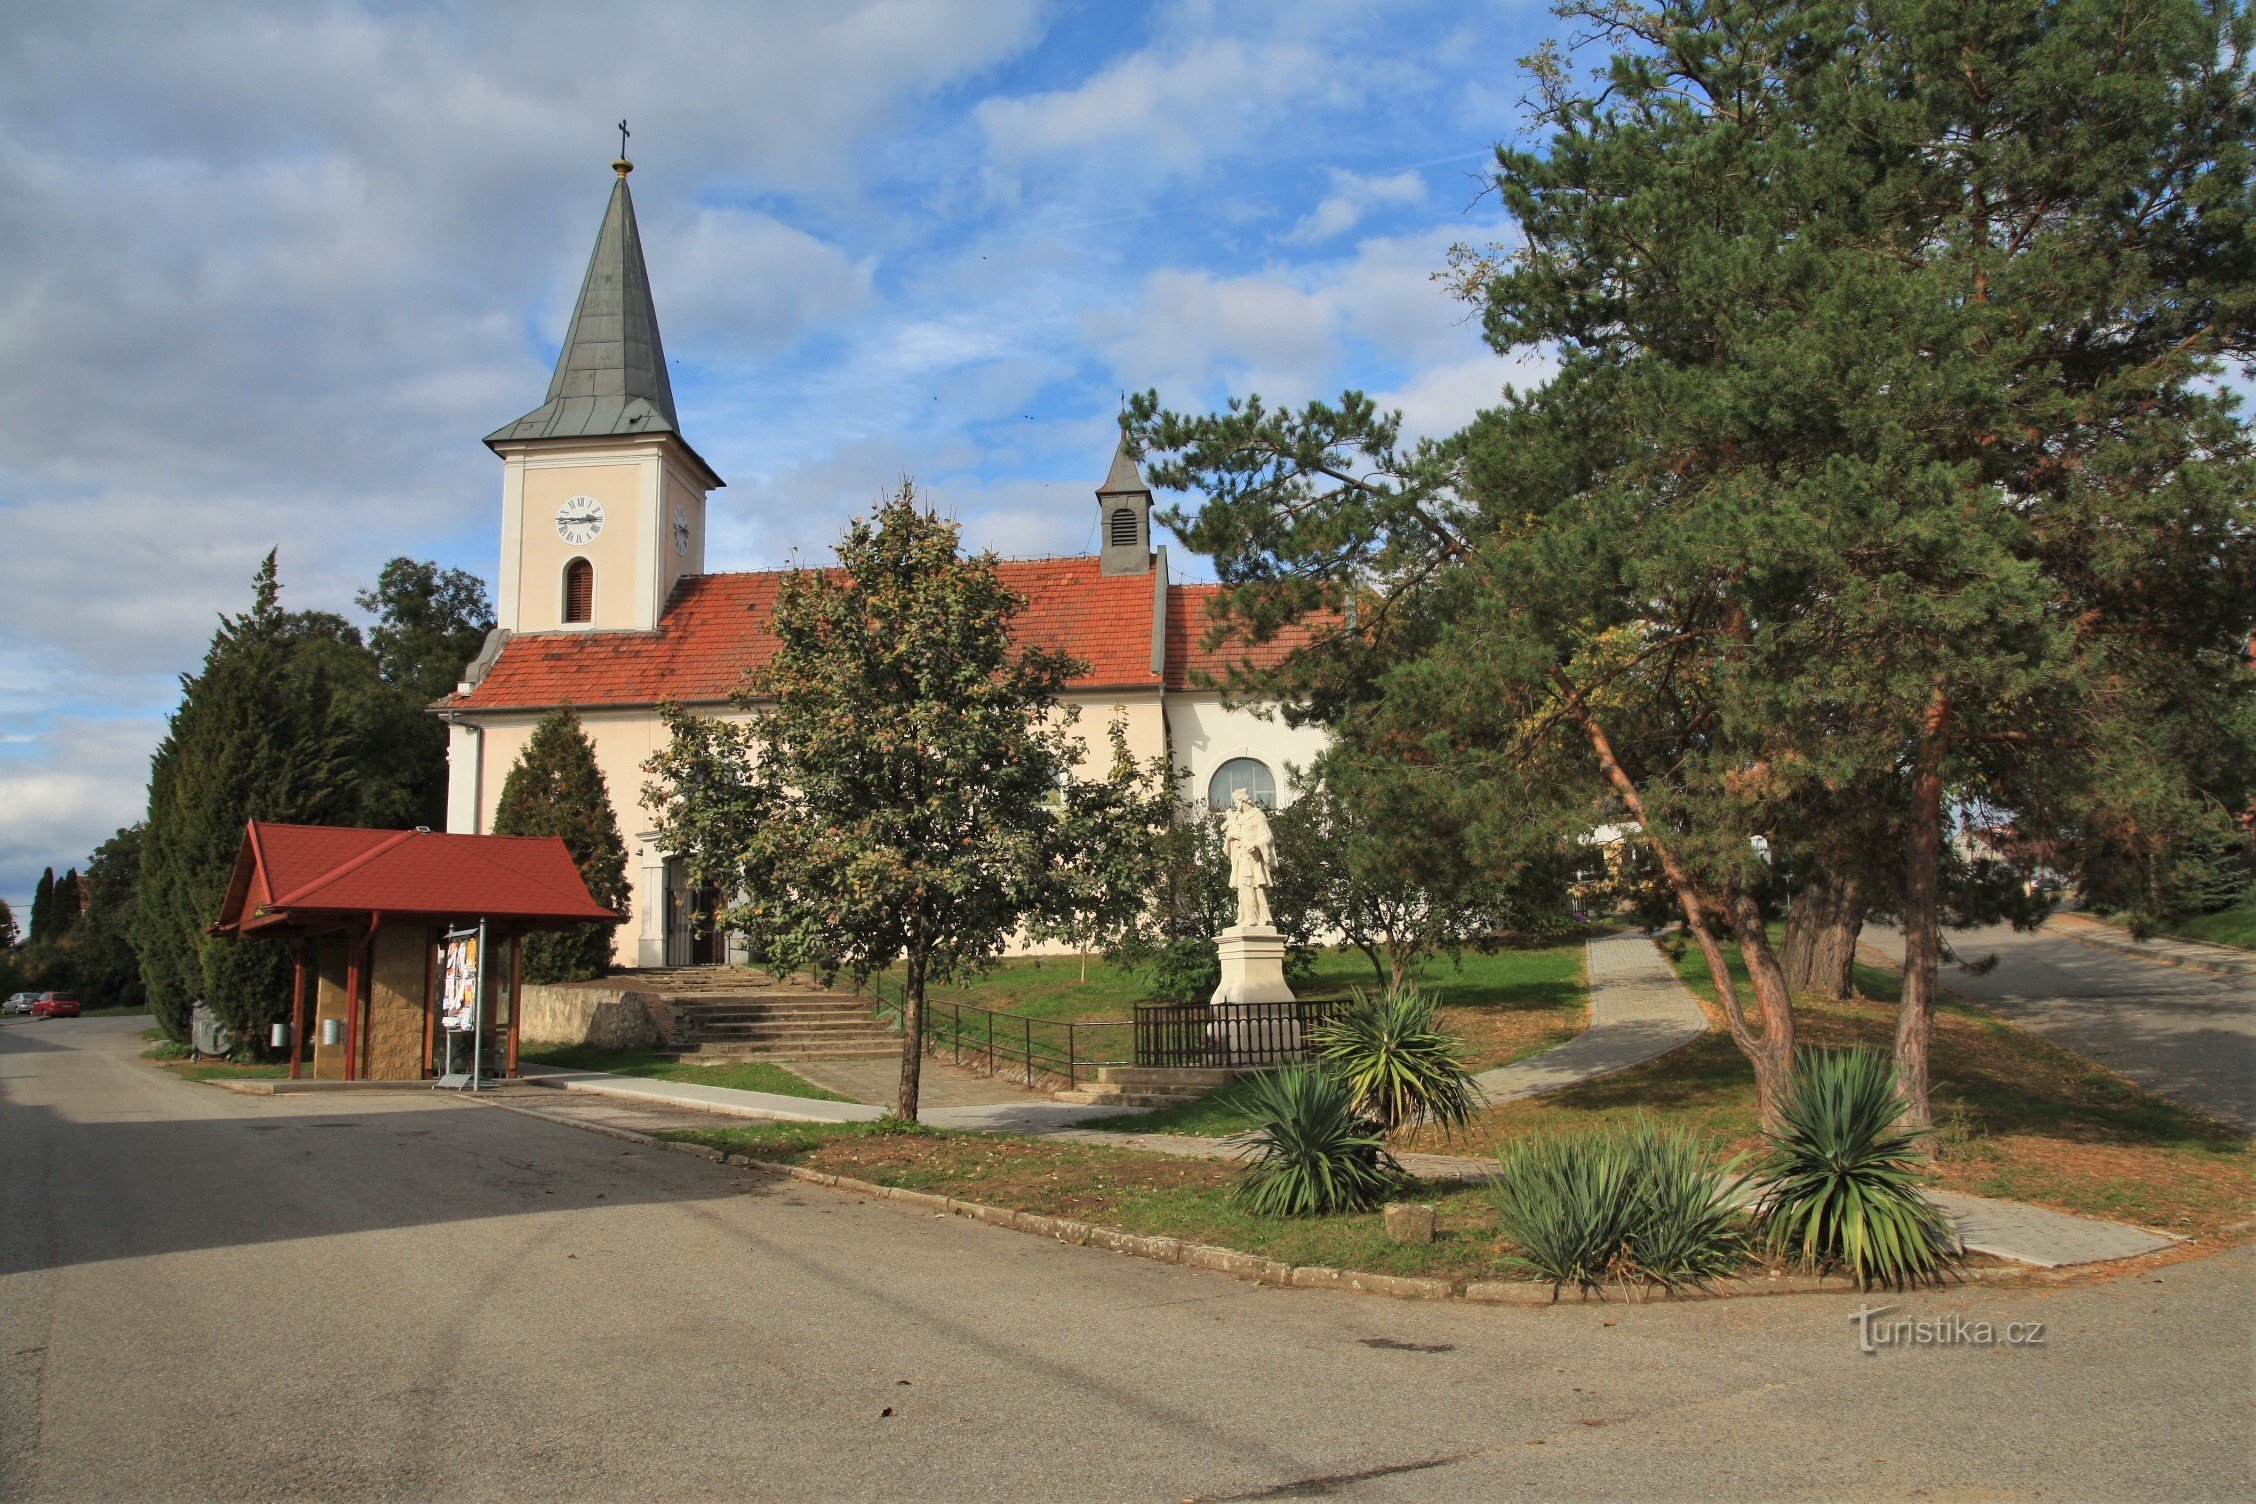 Landsbyen Pribic er domineret af kirken St. Johannes Døberen